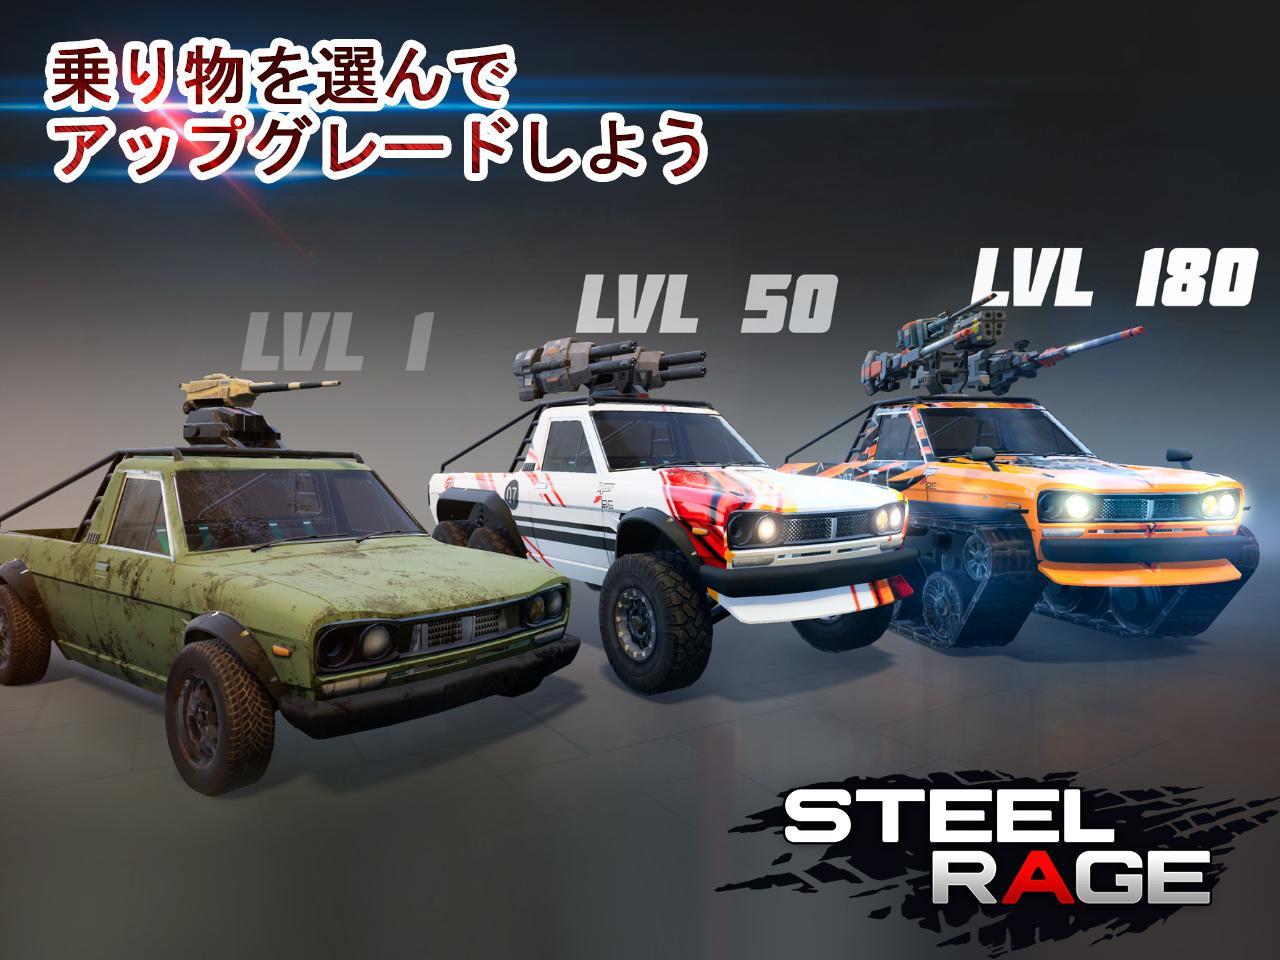 Steel Rage: ロボットカー 対戦シューティングのキャプチャ